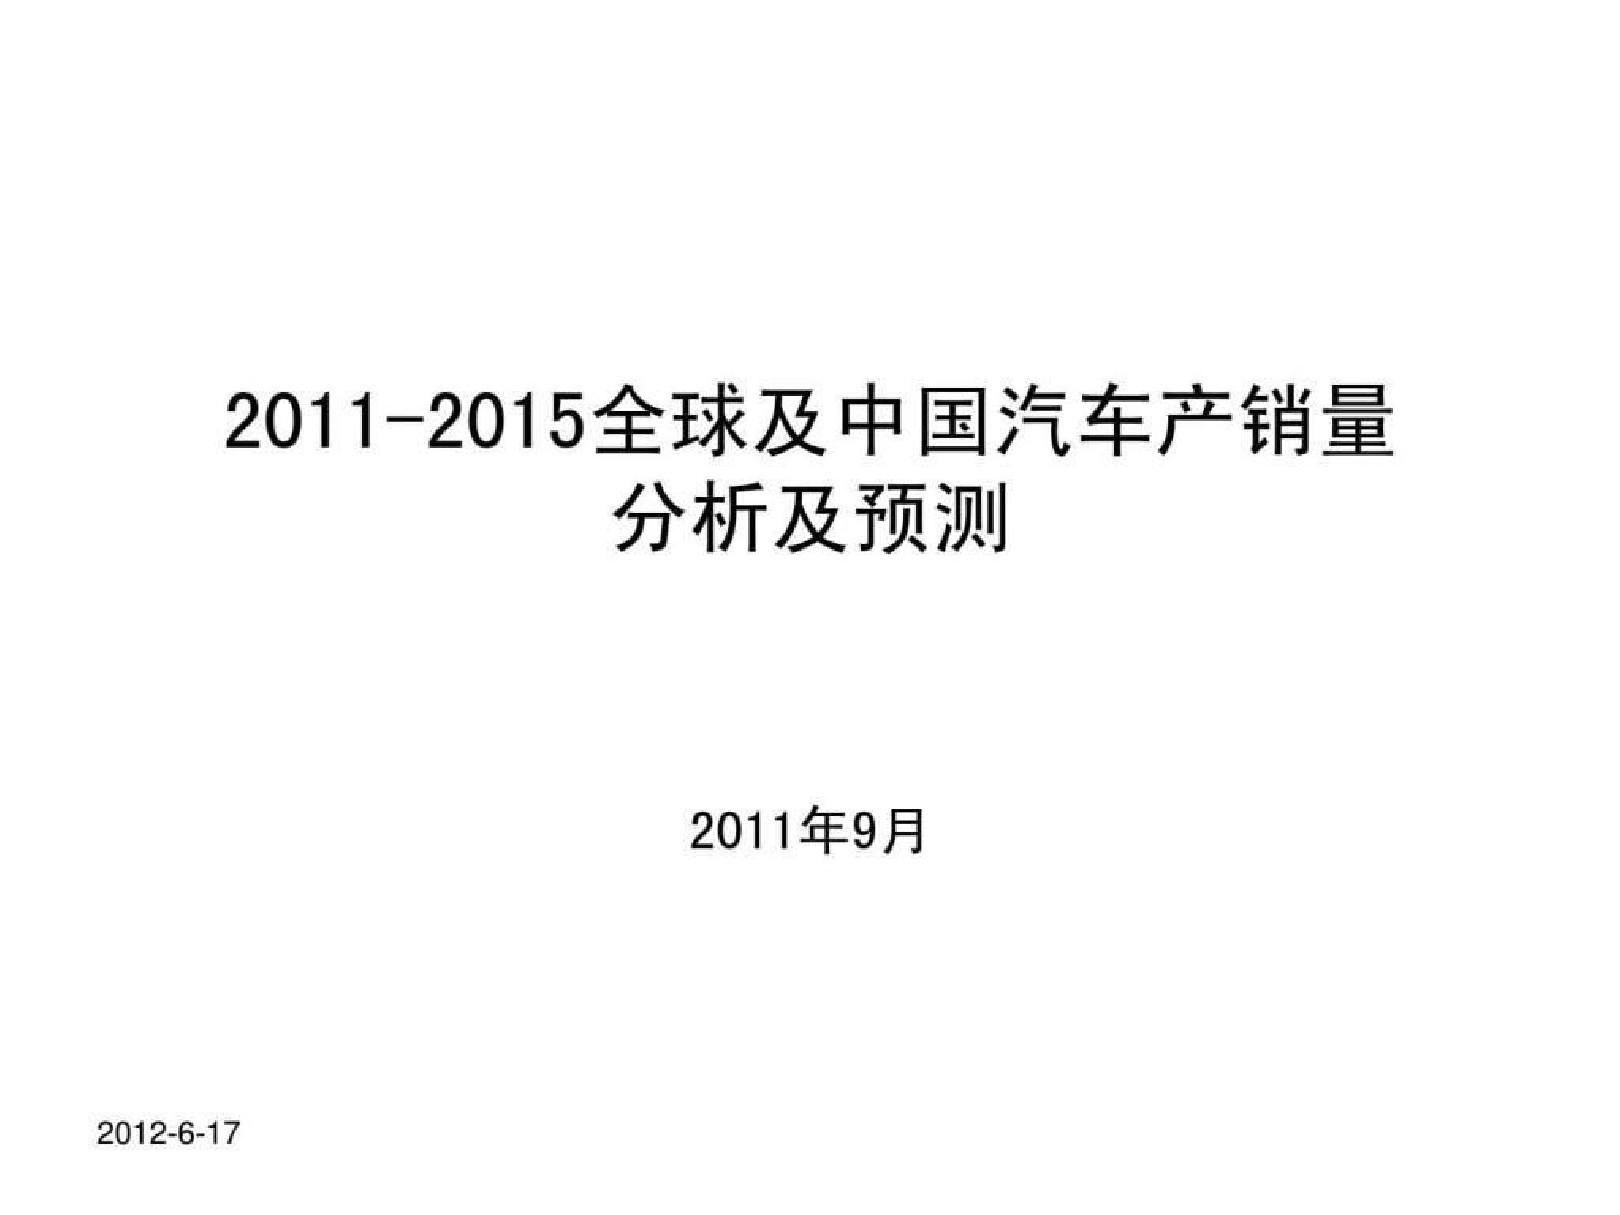 2019 2019全球及中国汽车产销量分析及预测